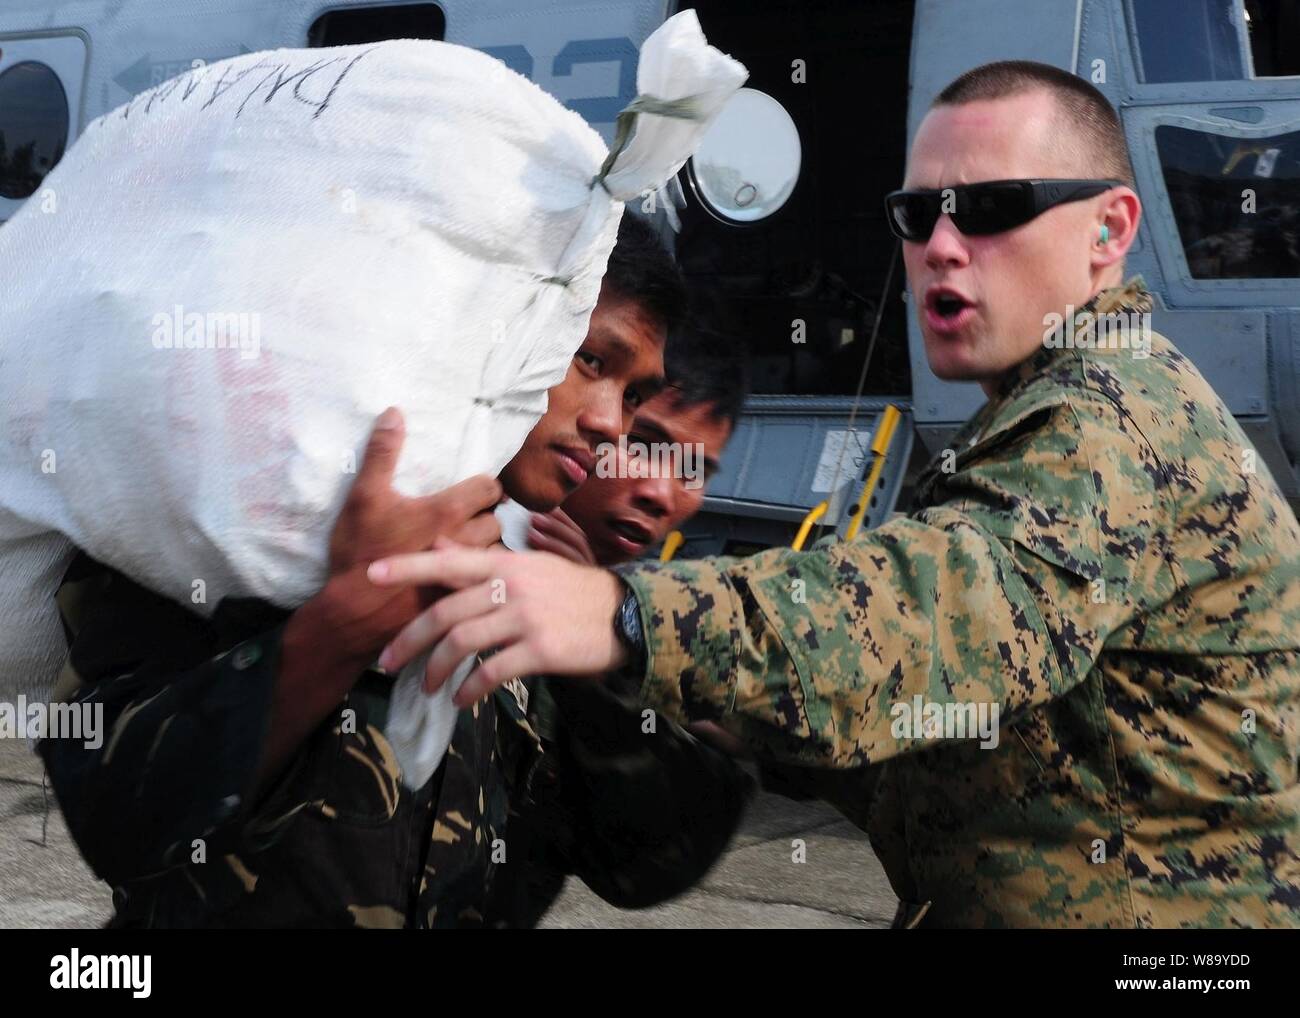 El Capitán del Cuerpo de Marines de EE.UU. Bill Woodward, desde la 31ª Unidad Expedicionaria de la Marina filipina, dirige a los miembros del servicio mientras se carga de suministros a un CH-46E Sea Knight helicóptero asignado al medio marino escuadrón de helicópteros 262 en Filipinas en Octubre 22, 2010. Los infantes de marina con la 31ª Unidad Expedicionaria de los Infantes de Marina están colaborando con el gobierno de Filipinas con la evaluación de los daños causados por el tifón Megi, que también es conocido localmente como el tifón Juan. Foto de stock